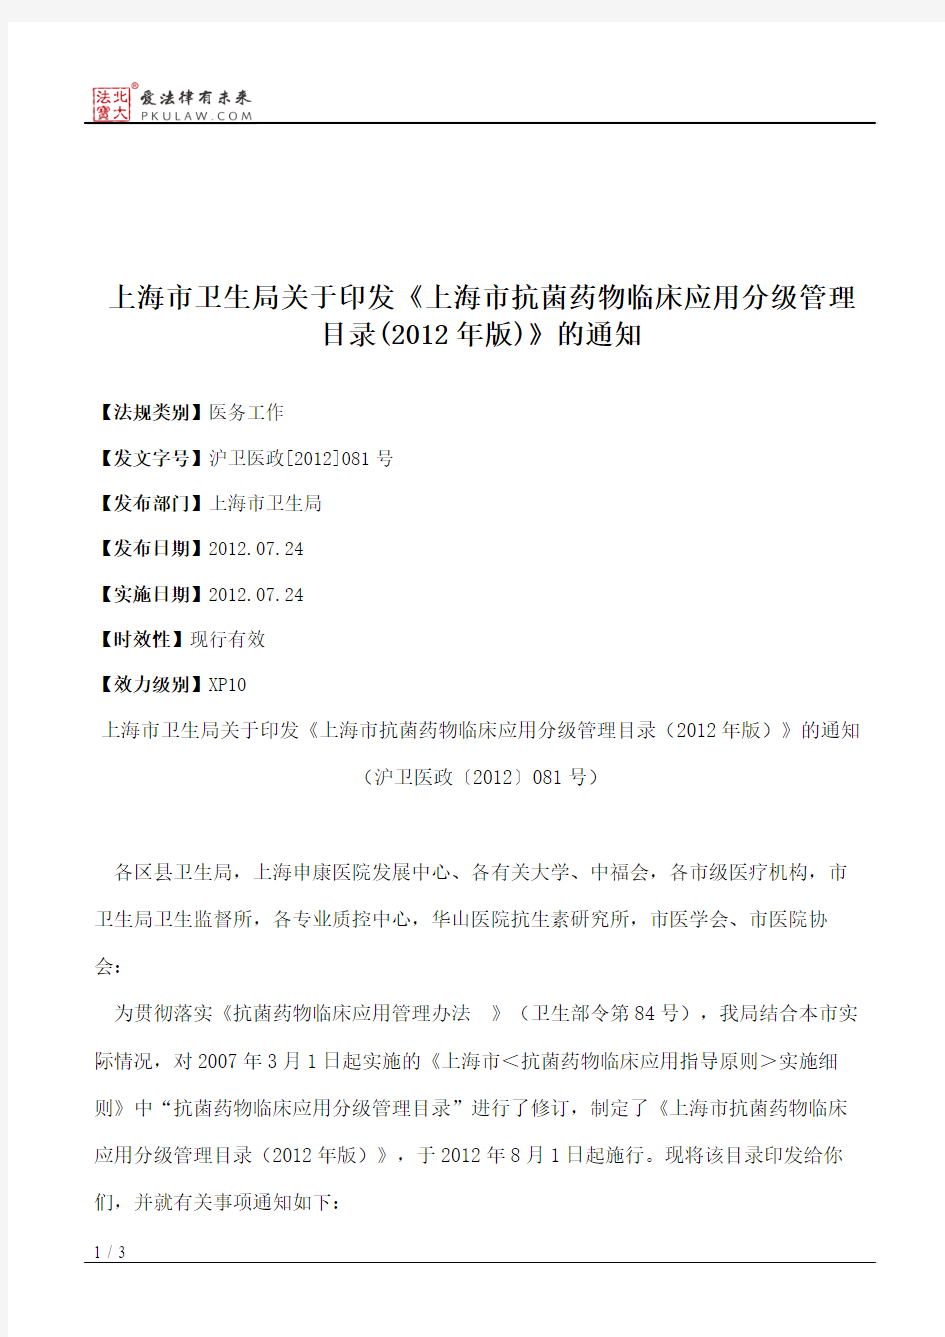 上海市卫生局关于印发《上海市抗菌药物临床应用分级管理目录(2012